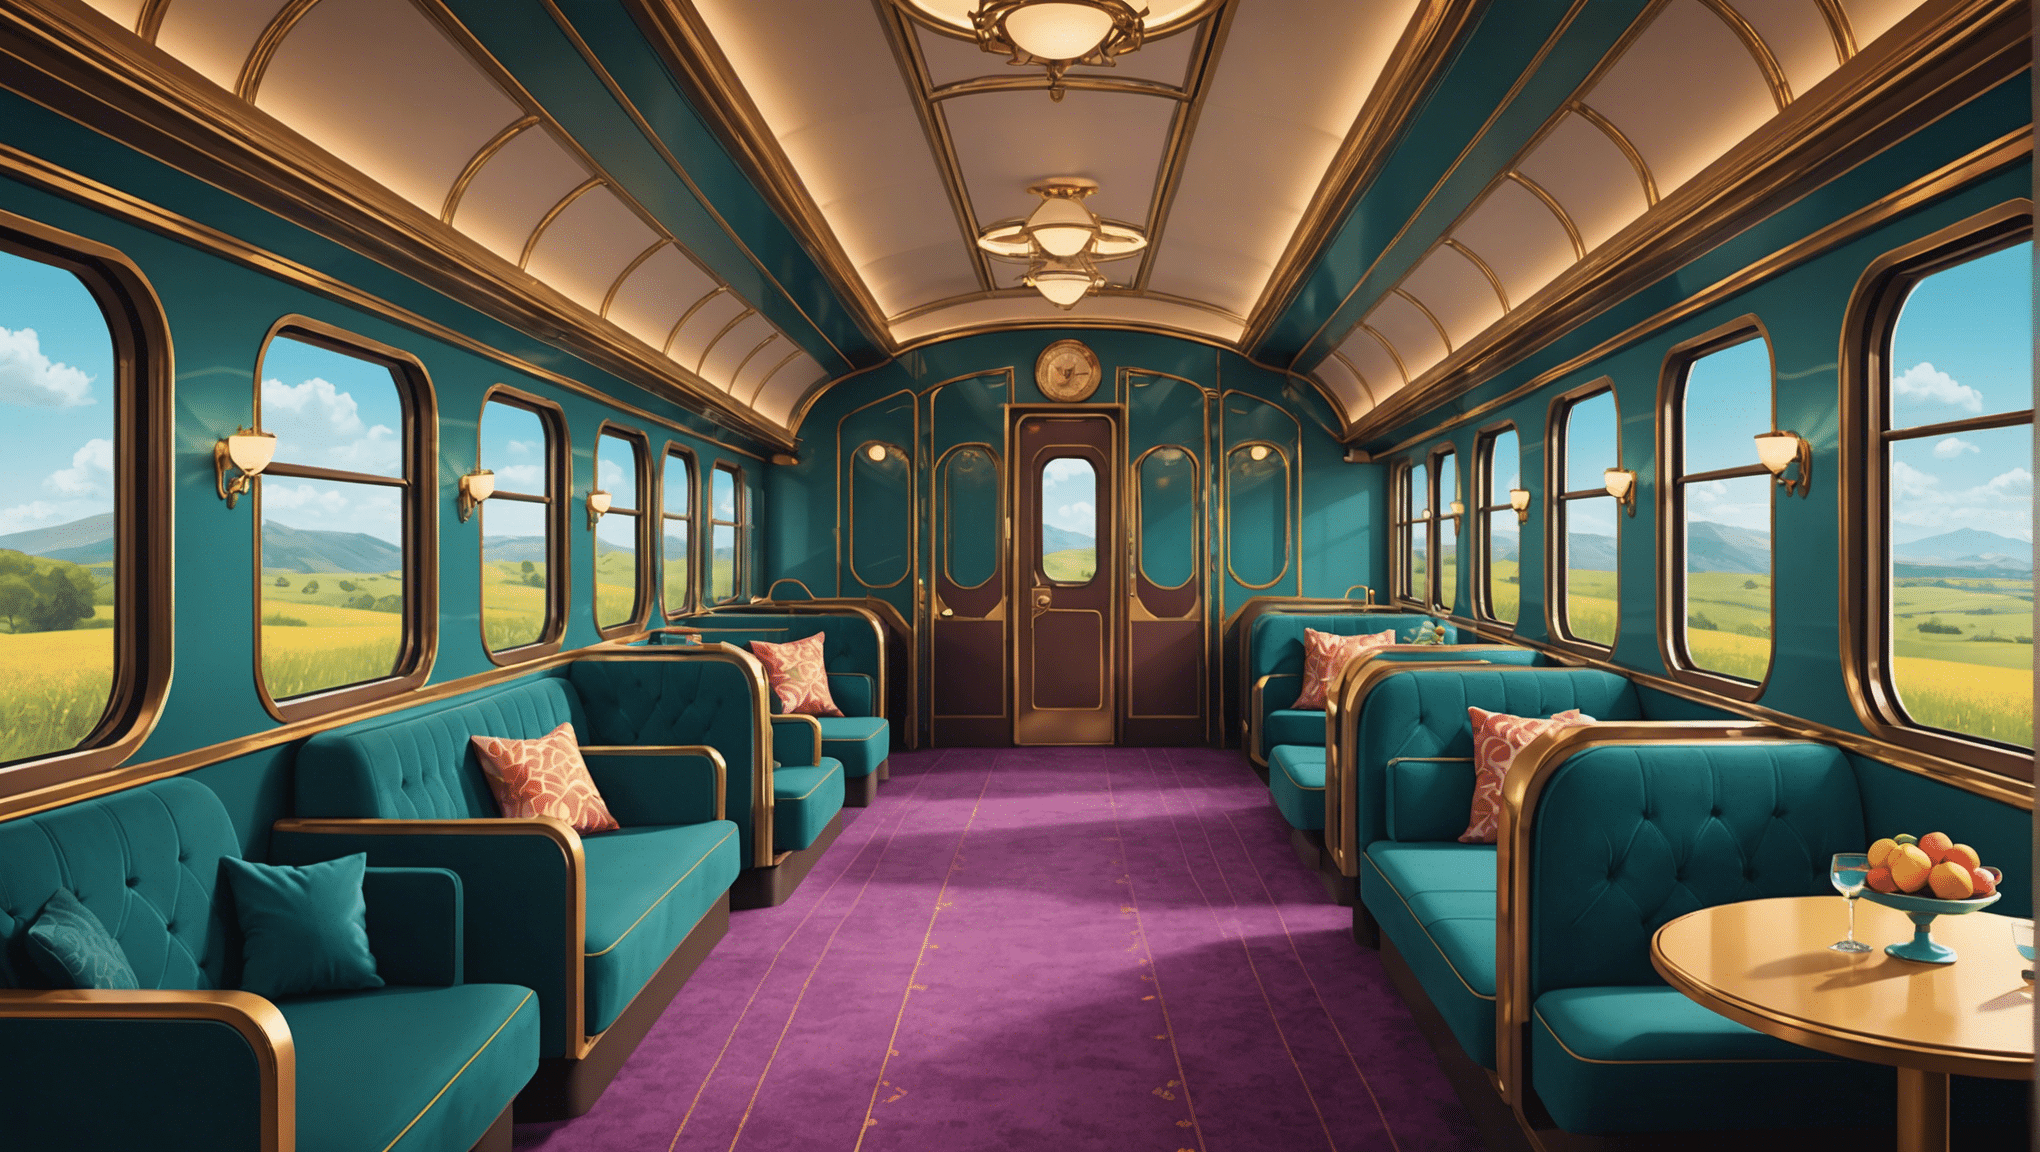 Descubra la inolvidable experiencia de viajar en tren de lujo en entornos suntuosos, para recuerdos duraderos.